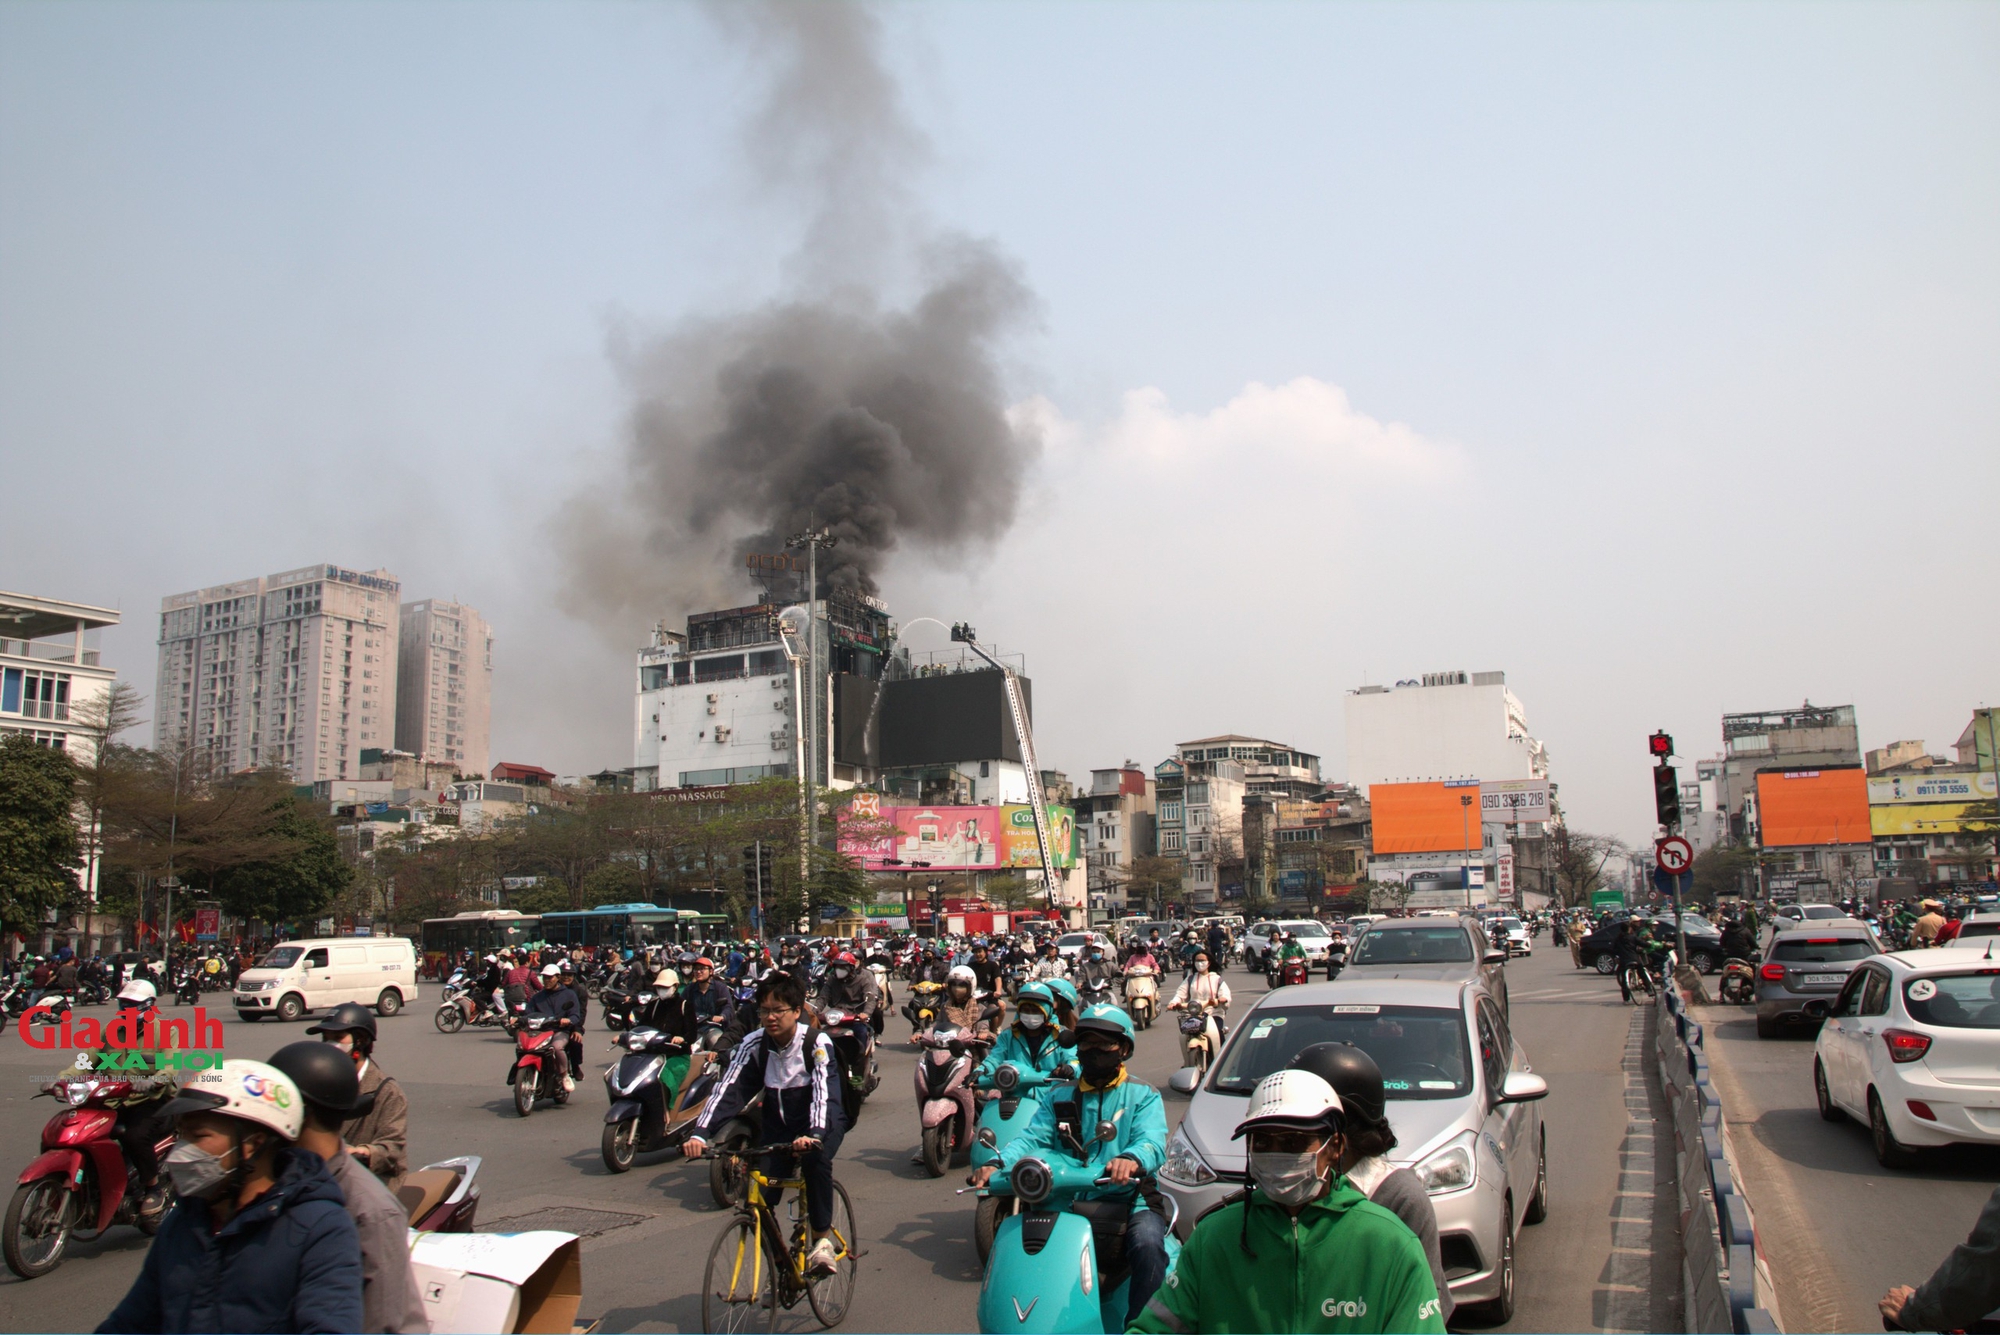 Hé lộ nguyên nhân cháy lớn tại tòa nhà 9 tầng tại ngã 5 nổi tiếng Hà Nội- Ảnh 1.